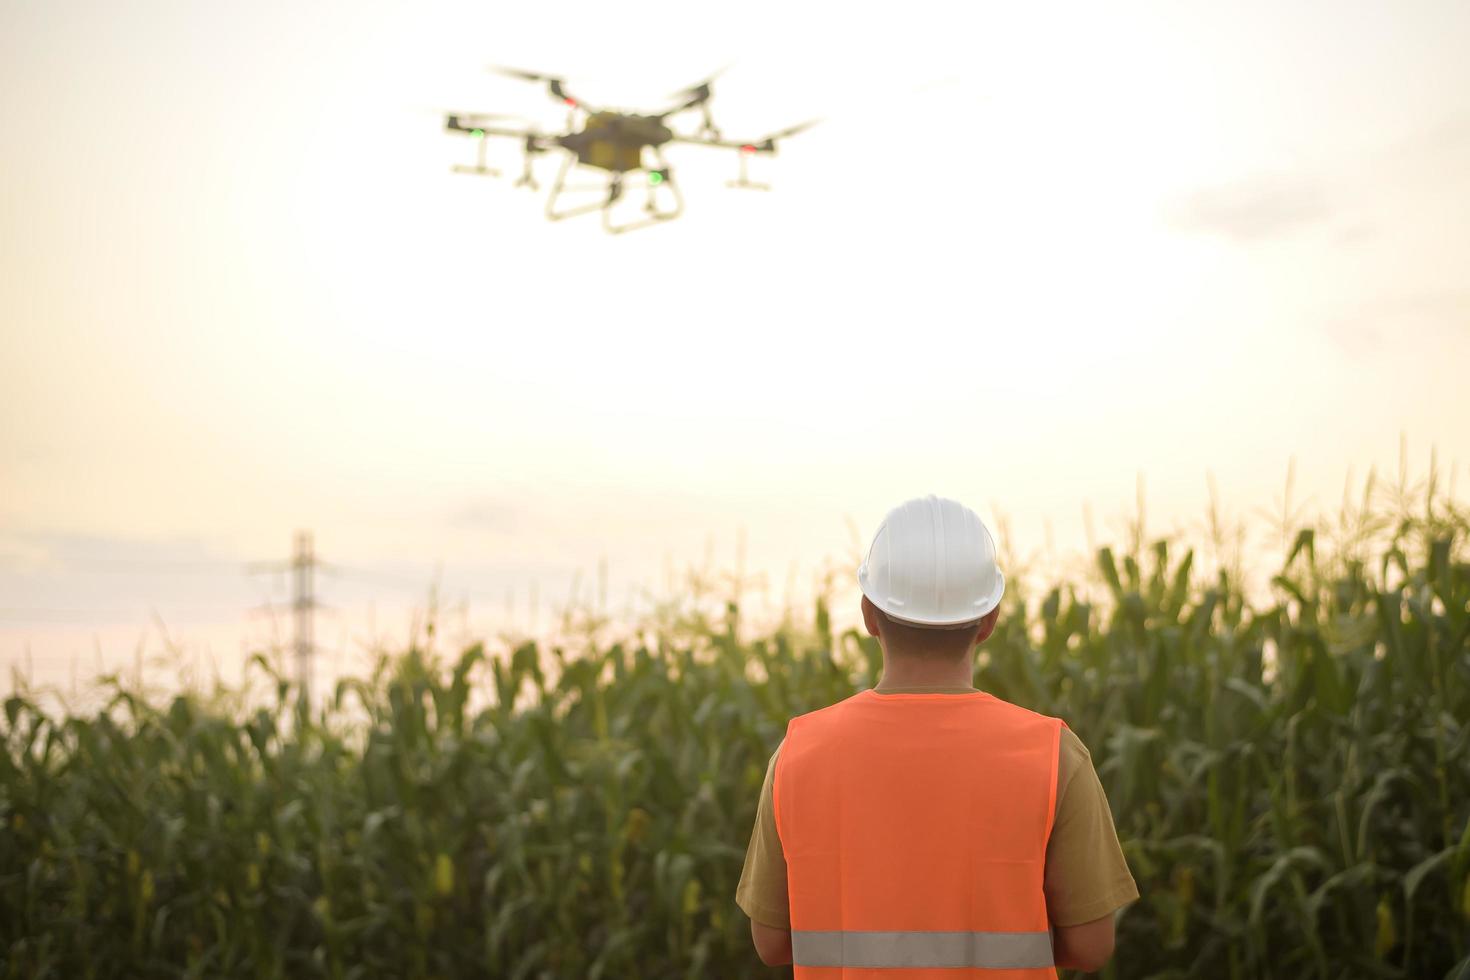 Männlicher Ingenieur, der Drohnen kontrolliert, die Düngemittel und Pestizide über Ackerland sprühen, High-Tech-Innovationen und intelligente Landwirtschaft foto